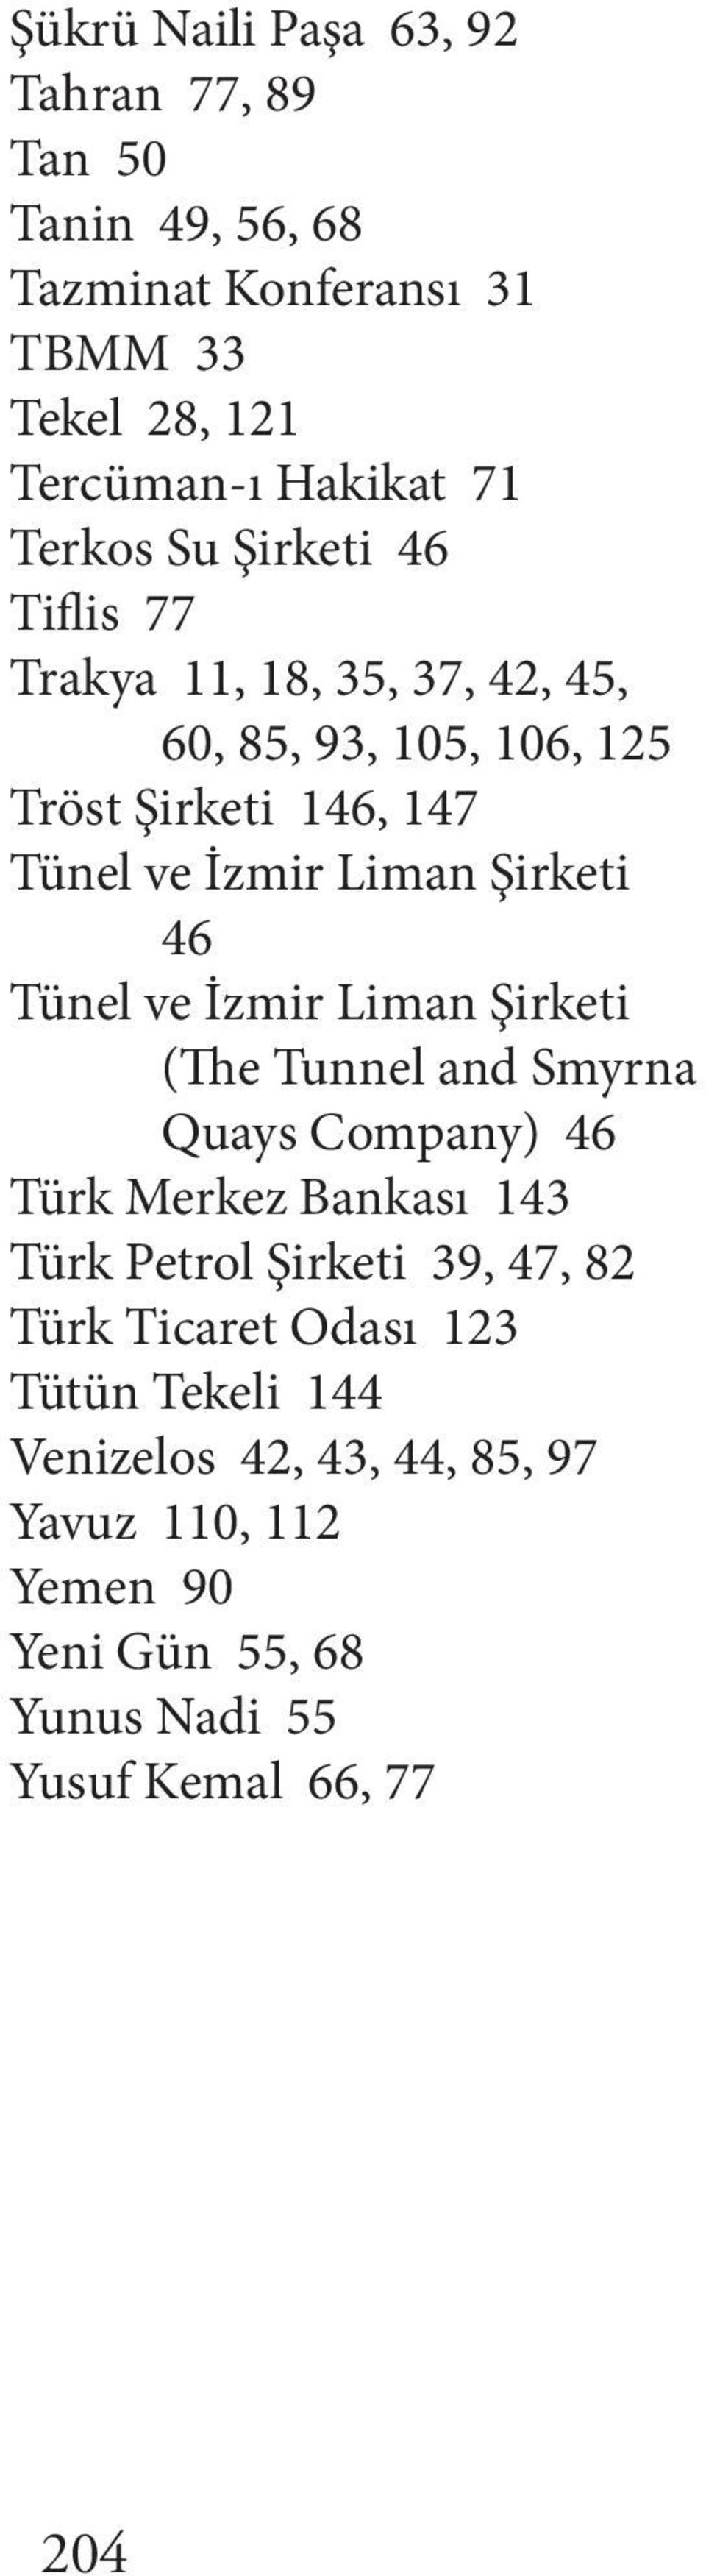 Tünel ve İzmir Liman Şirketi (The Tunnel and Smyrna Quays Company) 46 Türk Merkez Bankası 143 Türk Petrol Şirketi 39, 47, 82 Türk